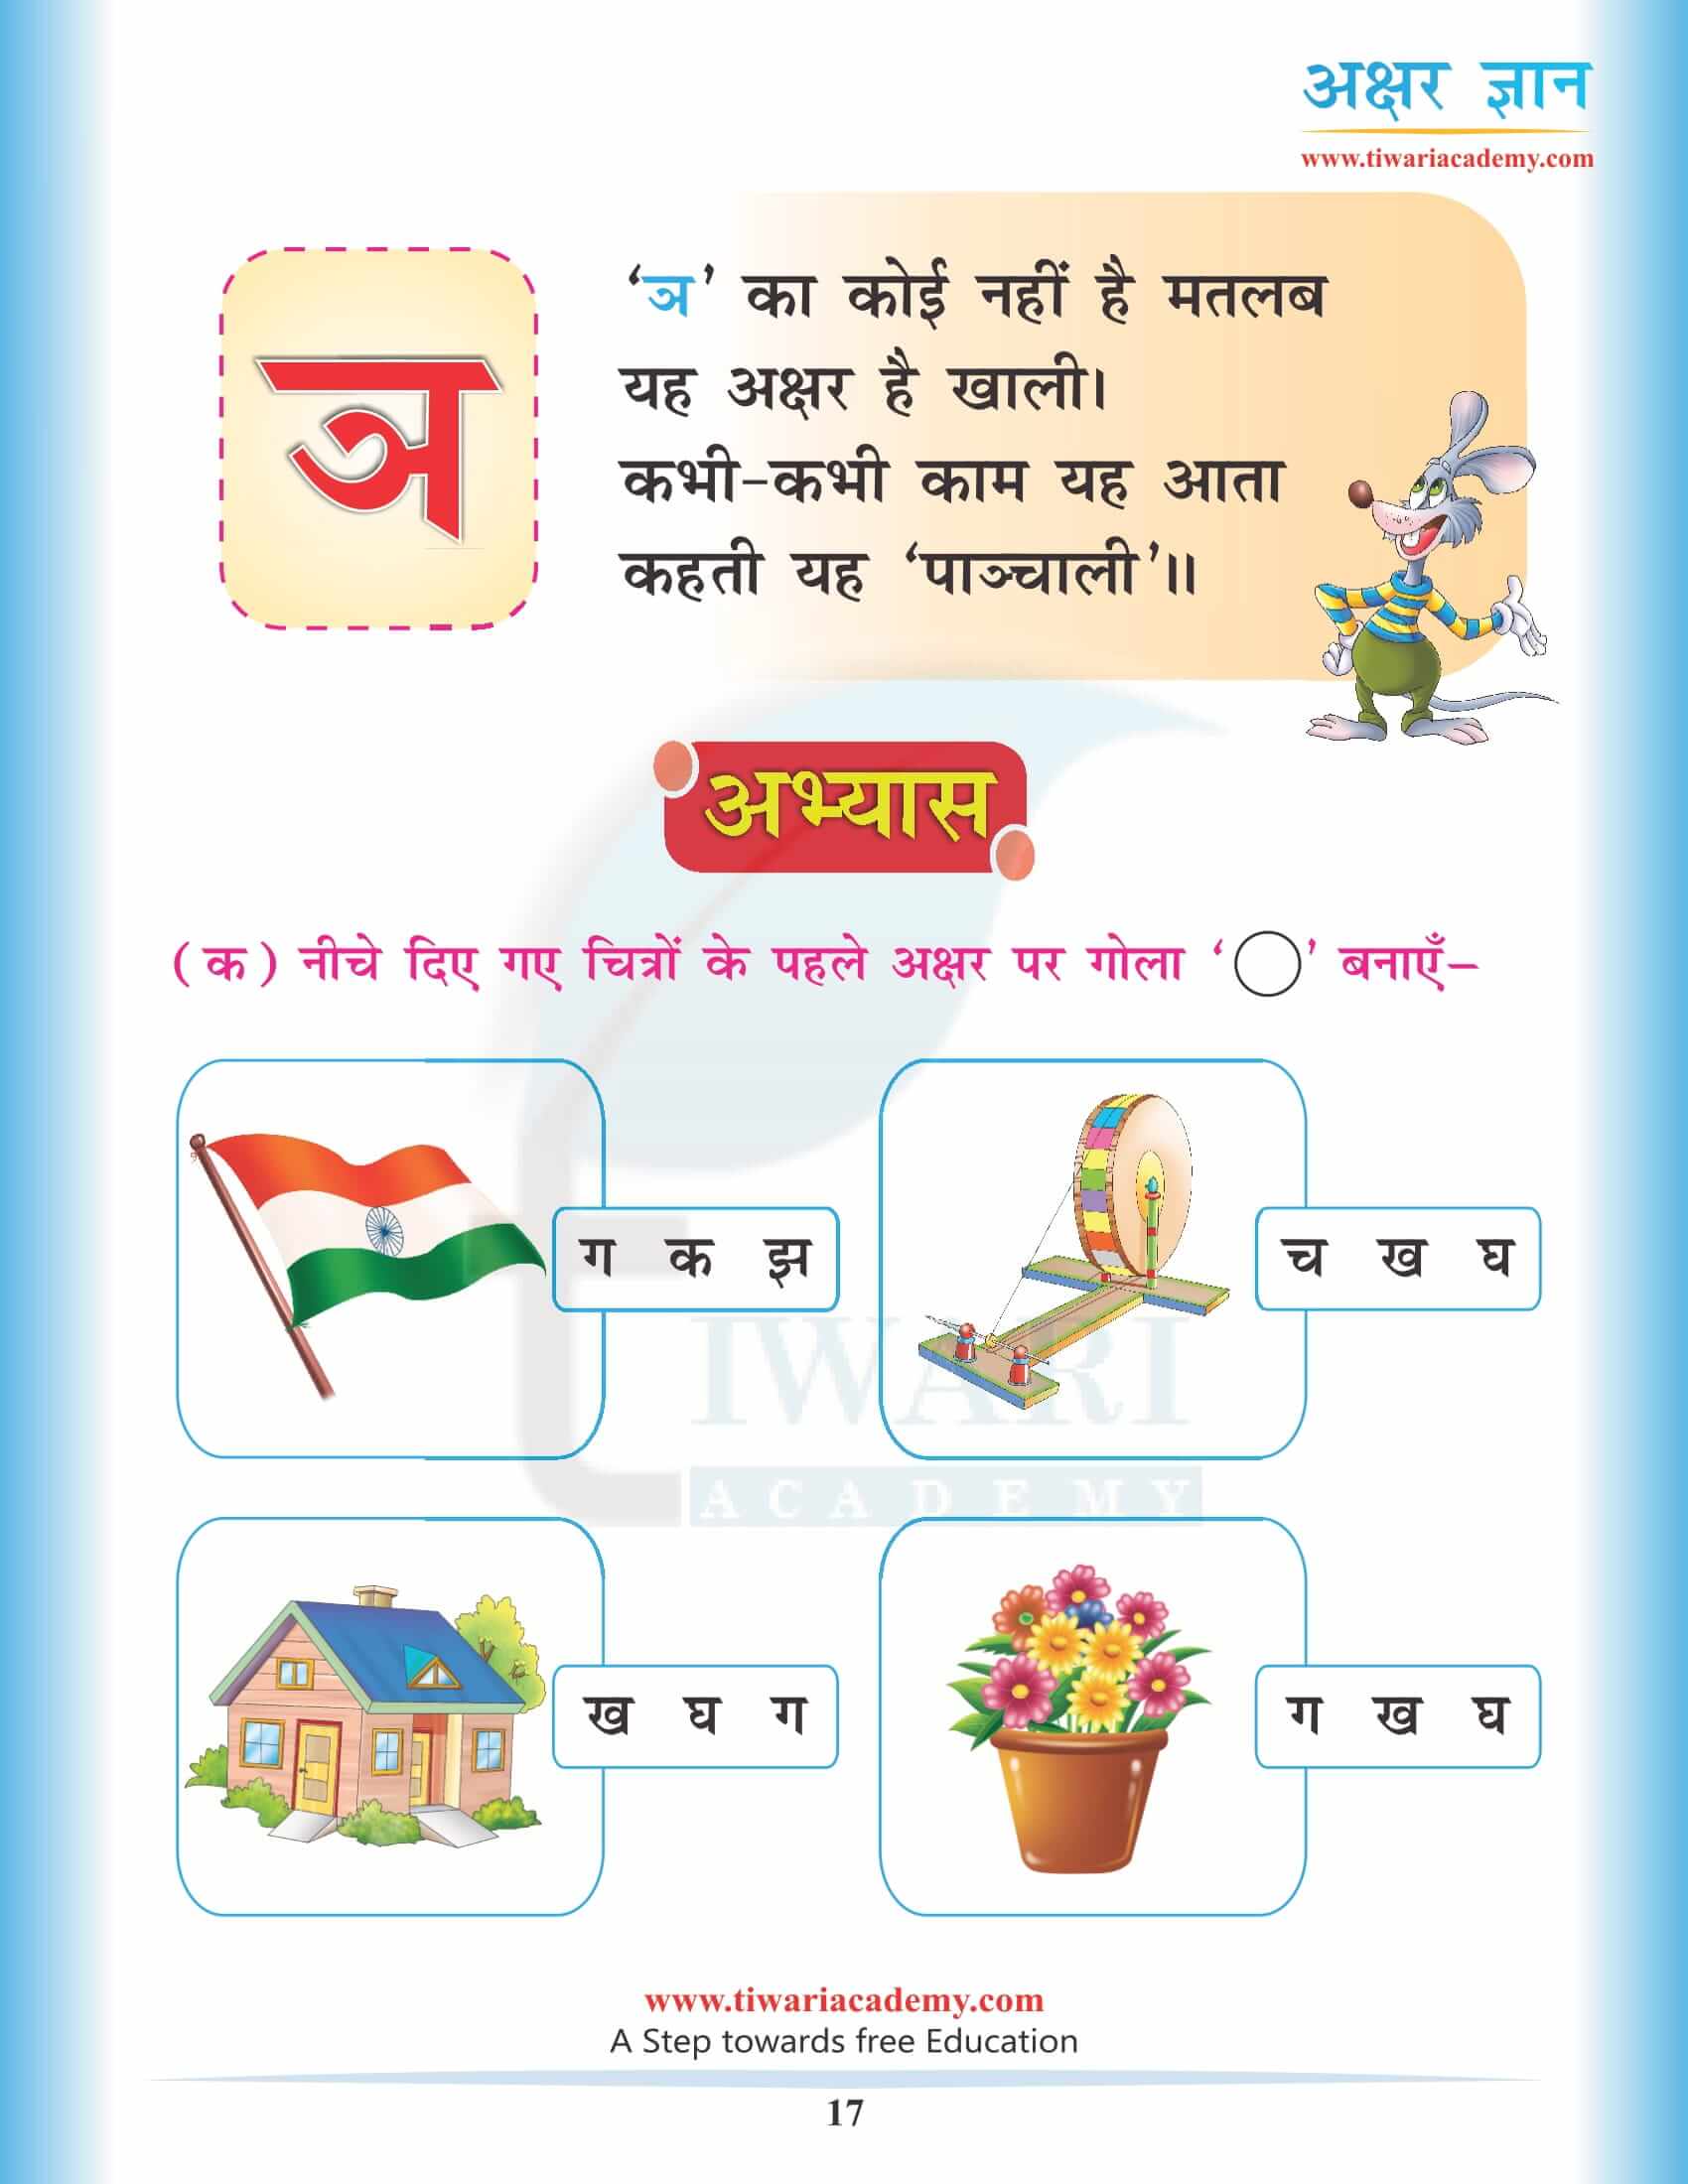 Hindi Alphabets iyan